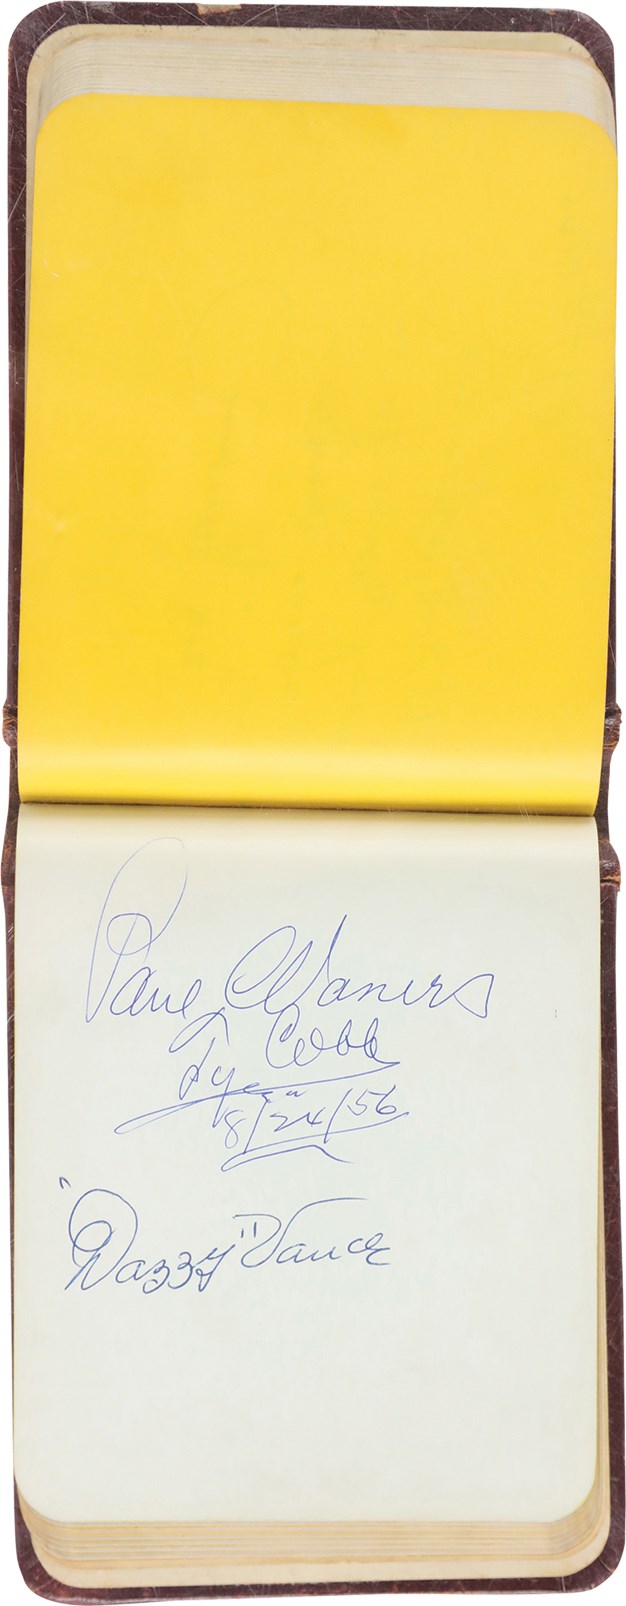 Marconi's (Baltimore) Restaurant Autograph Album Guest Book Signed by 70 Plus JSA